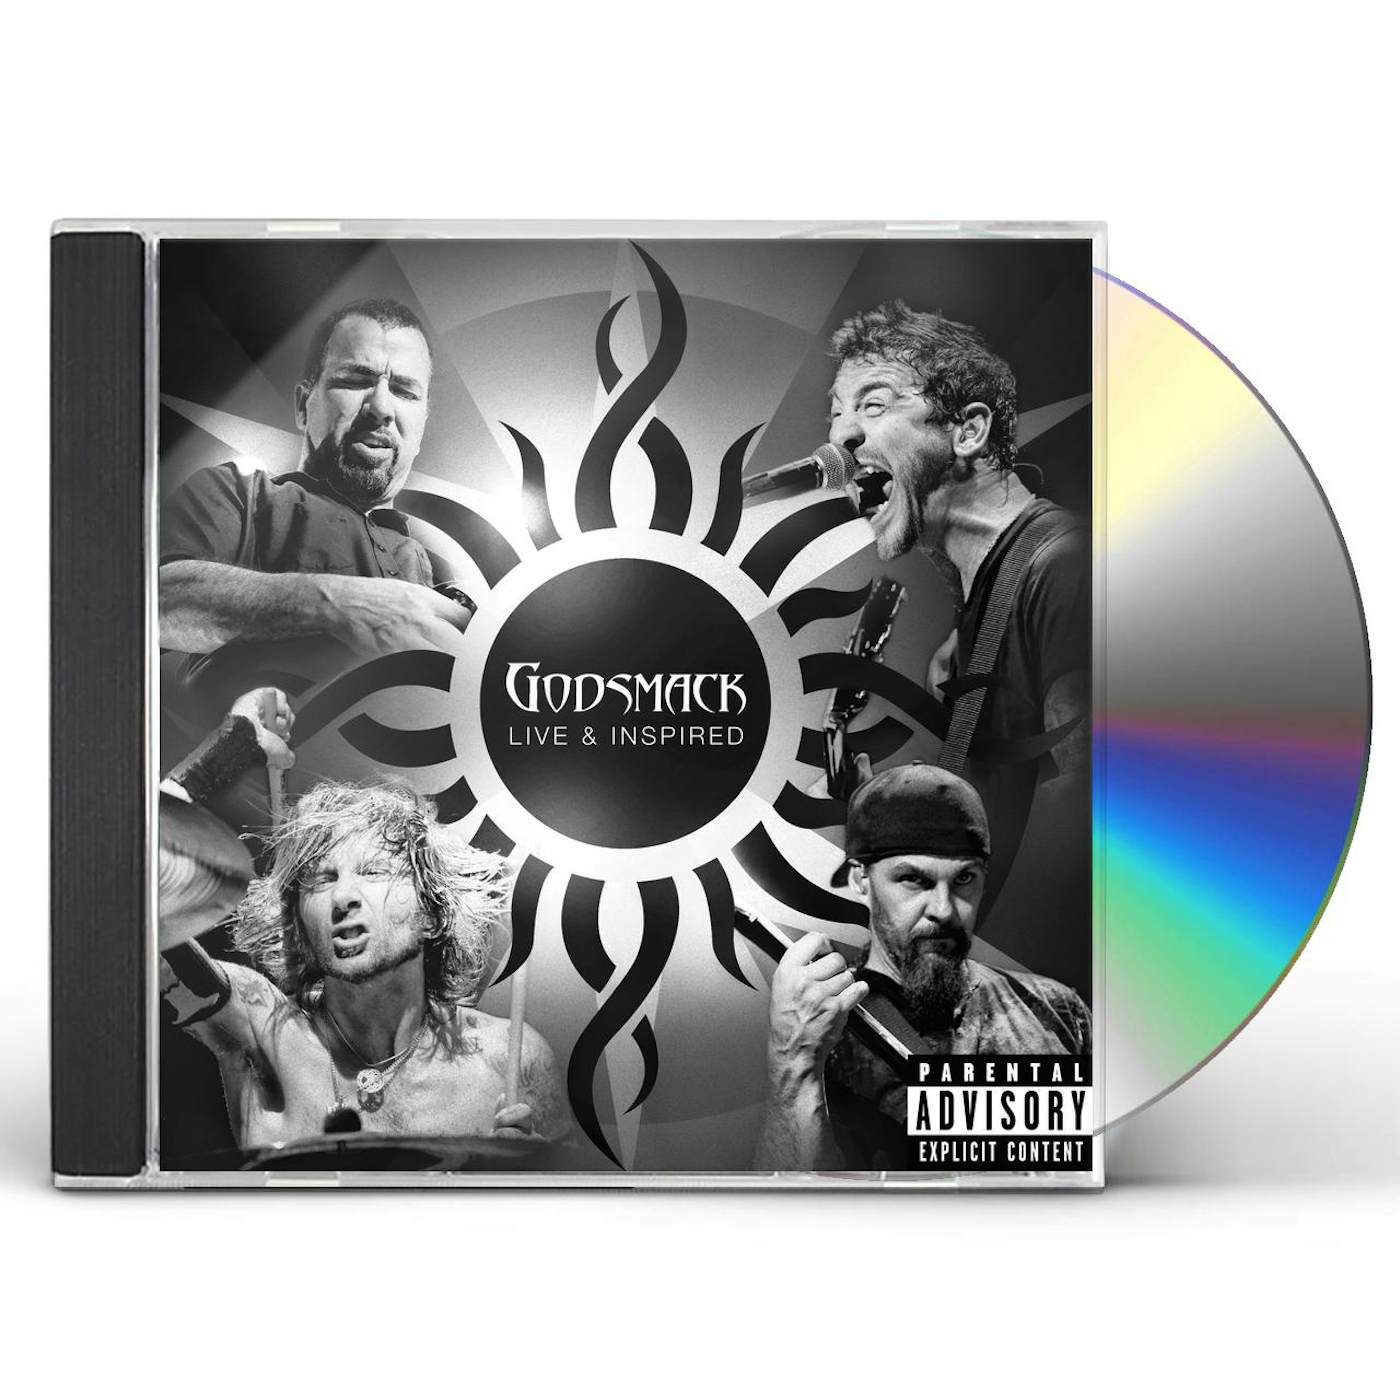 Godsmack LIVE & INSPIRED CD